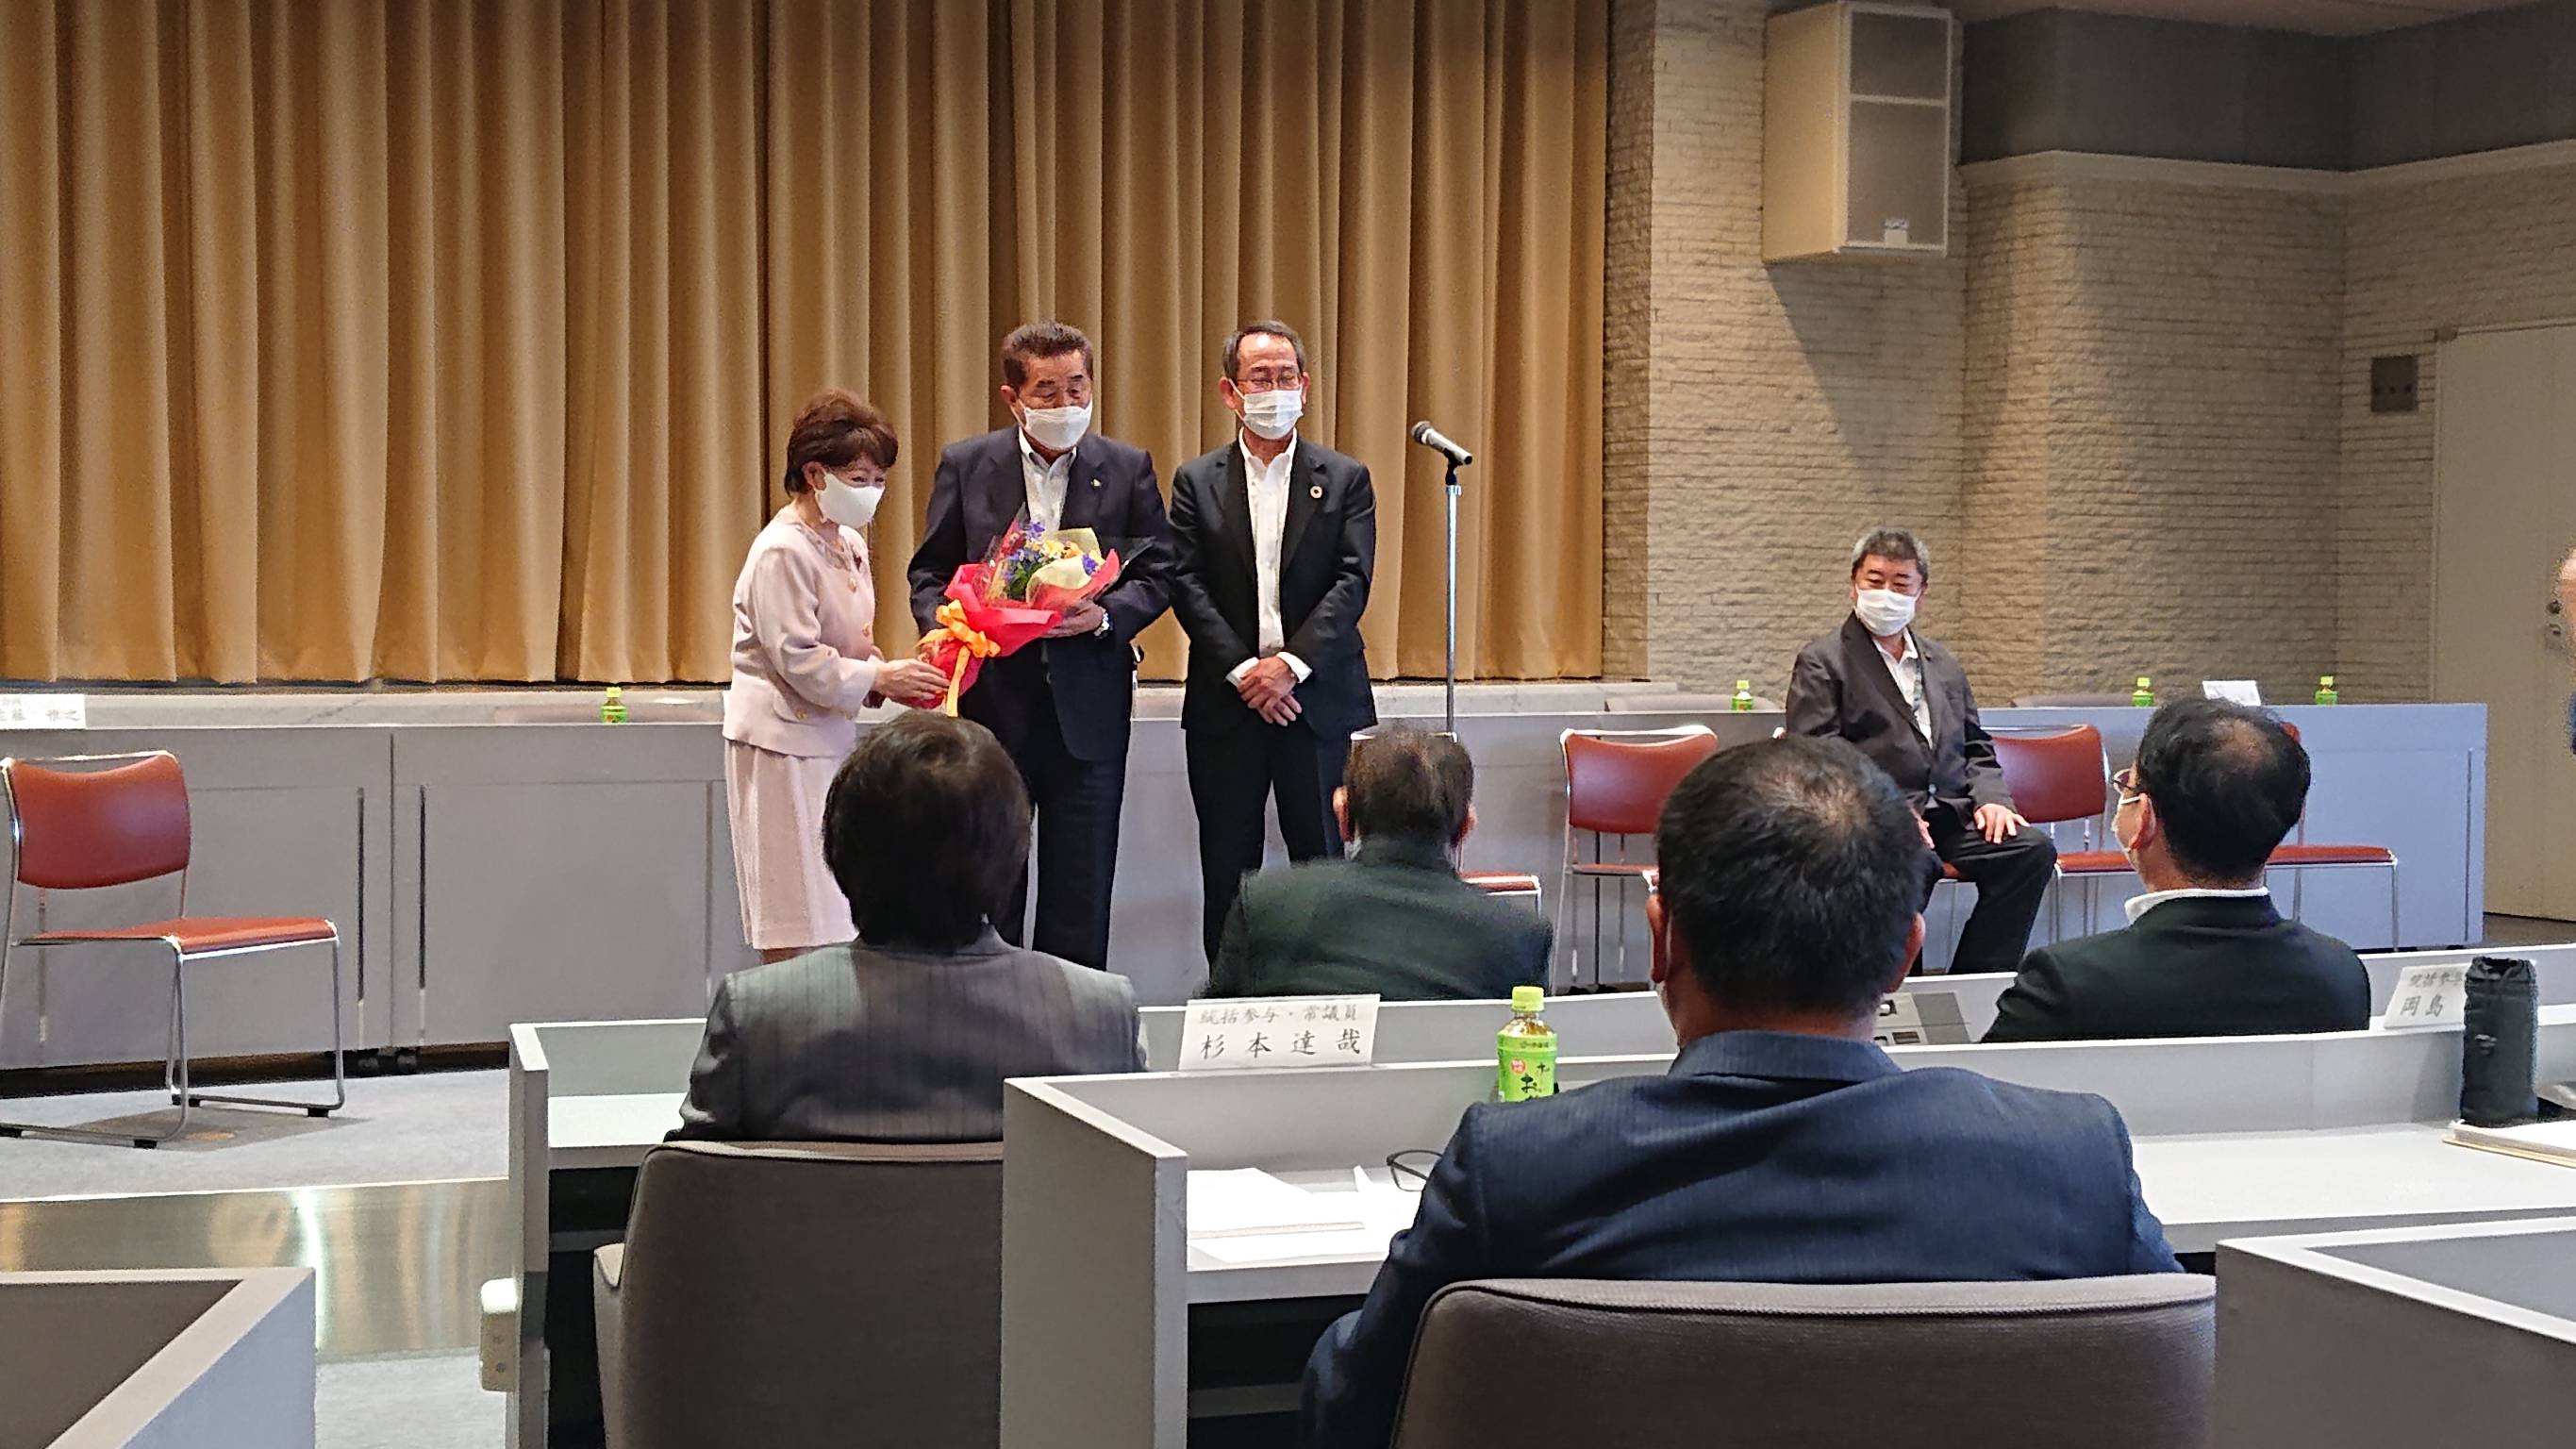 花田東海市新市長が挨拶にお越しになられました。